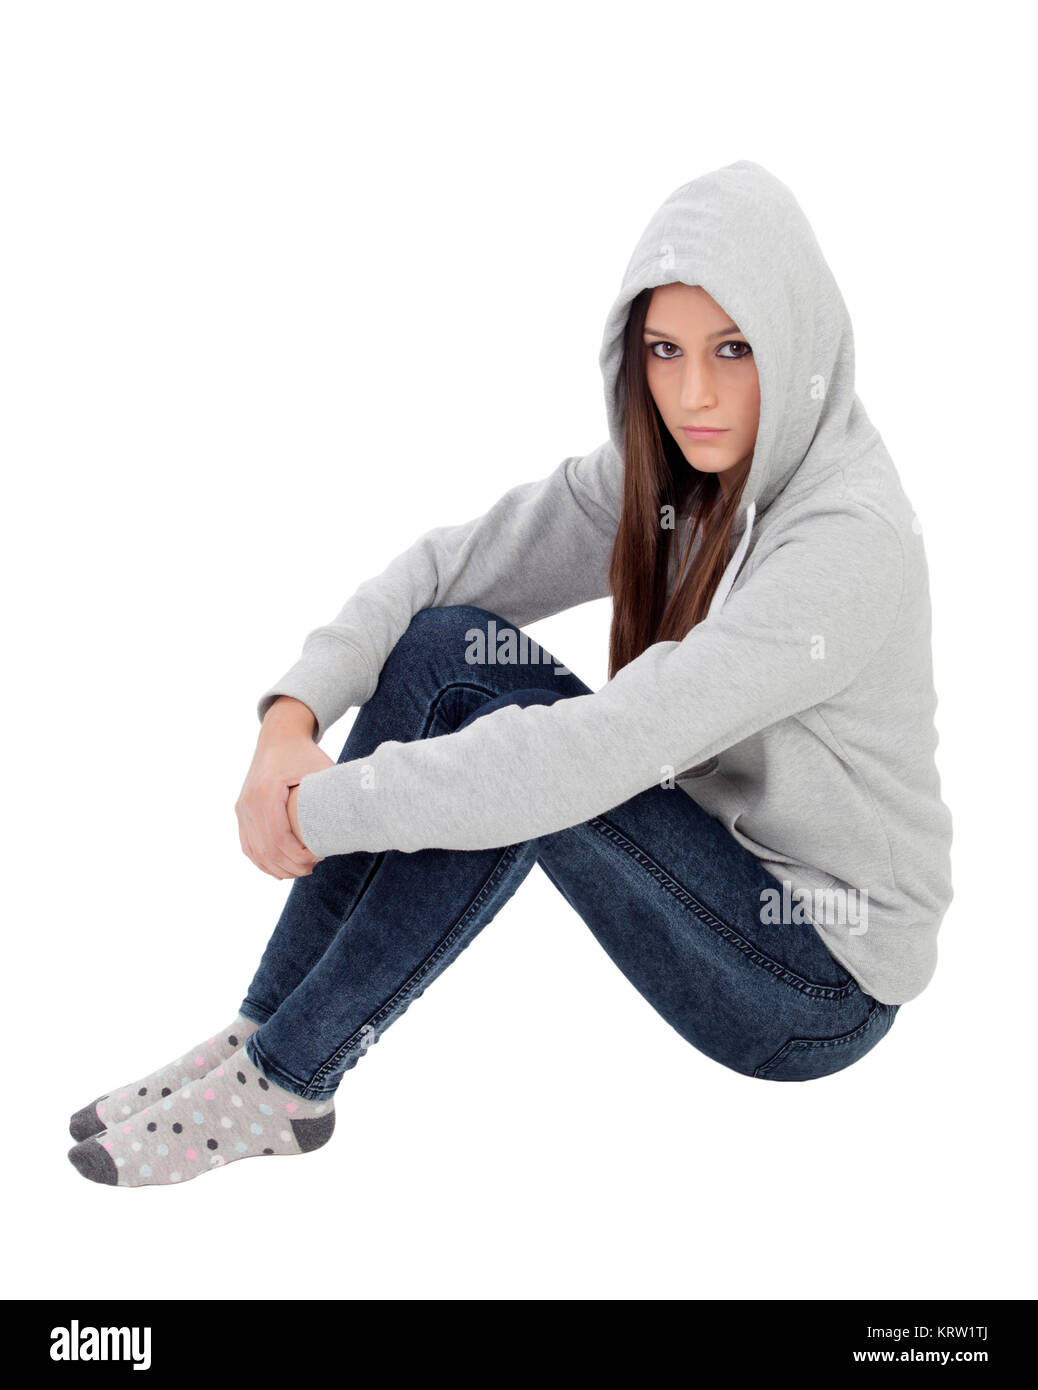 Fille avec capuche en colère sweat gris assis sur le plancher Photo Stock -  Alamy